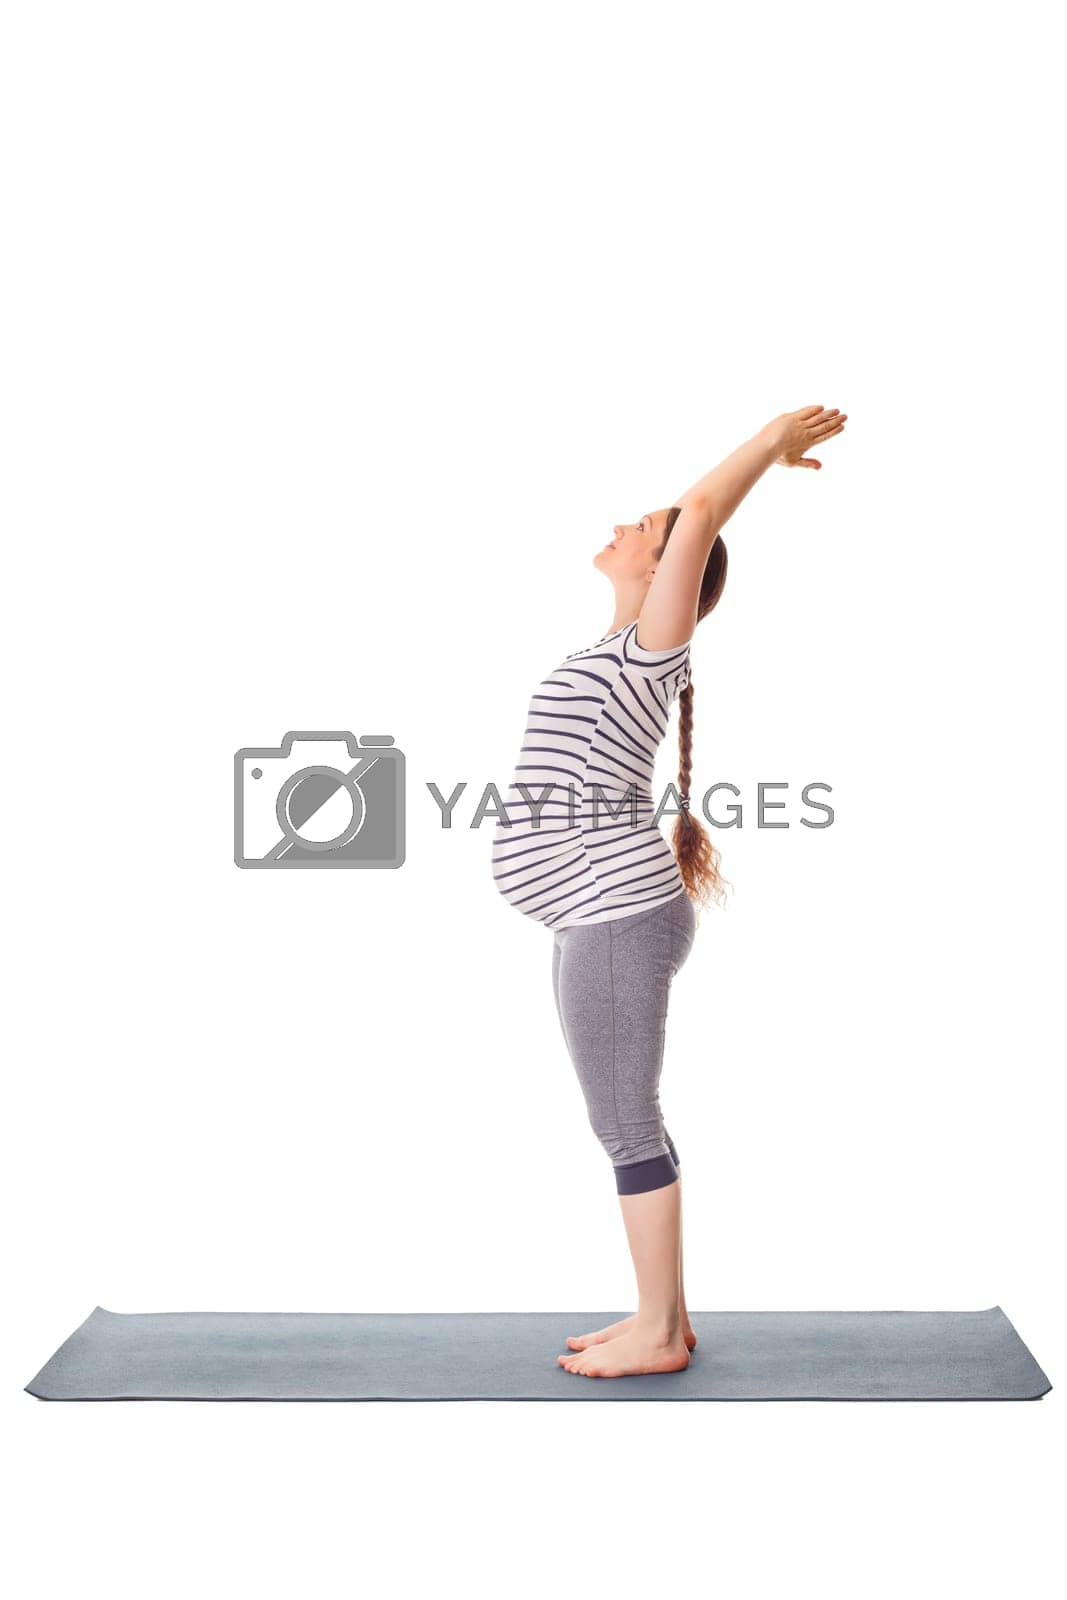 Royalty free image of Pregnant woman doing yoga asana Tadasana Mountain pose by dimol